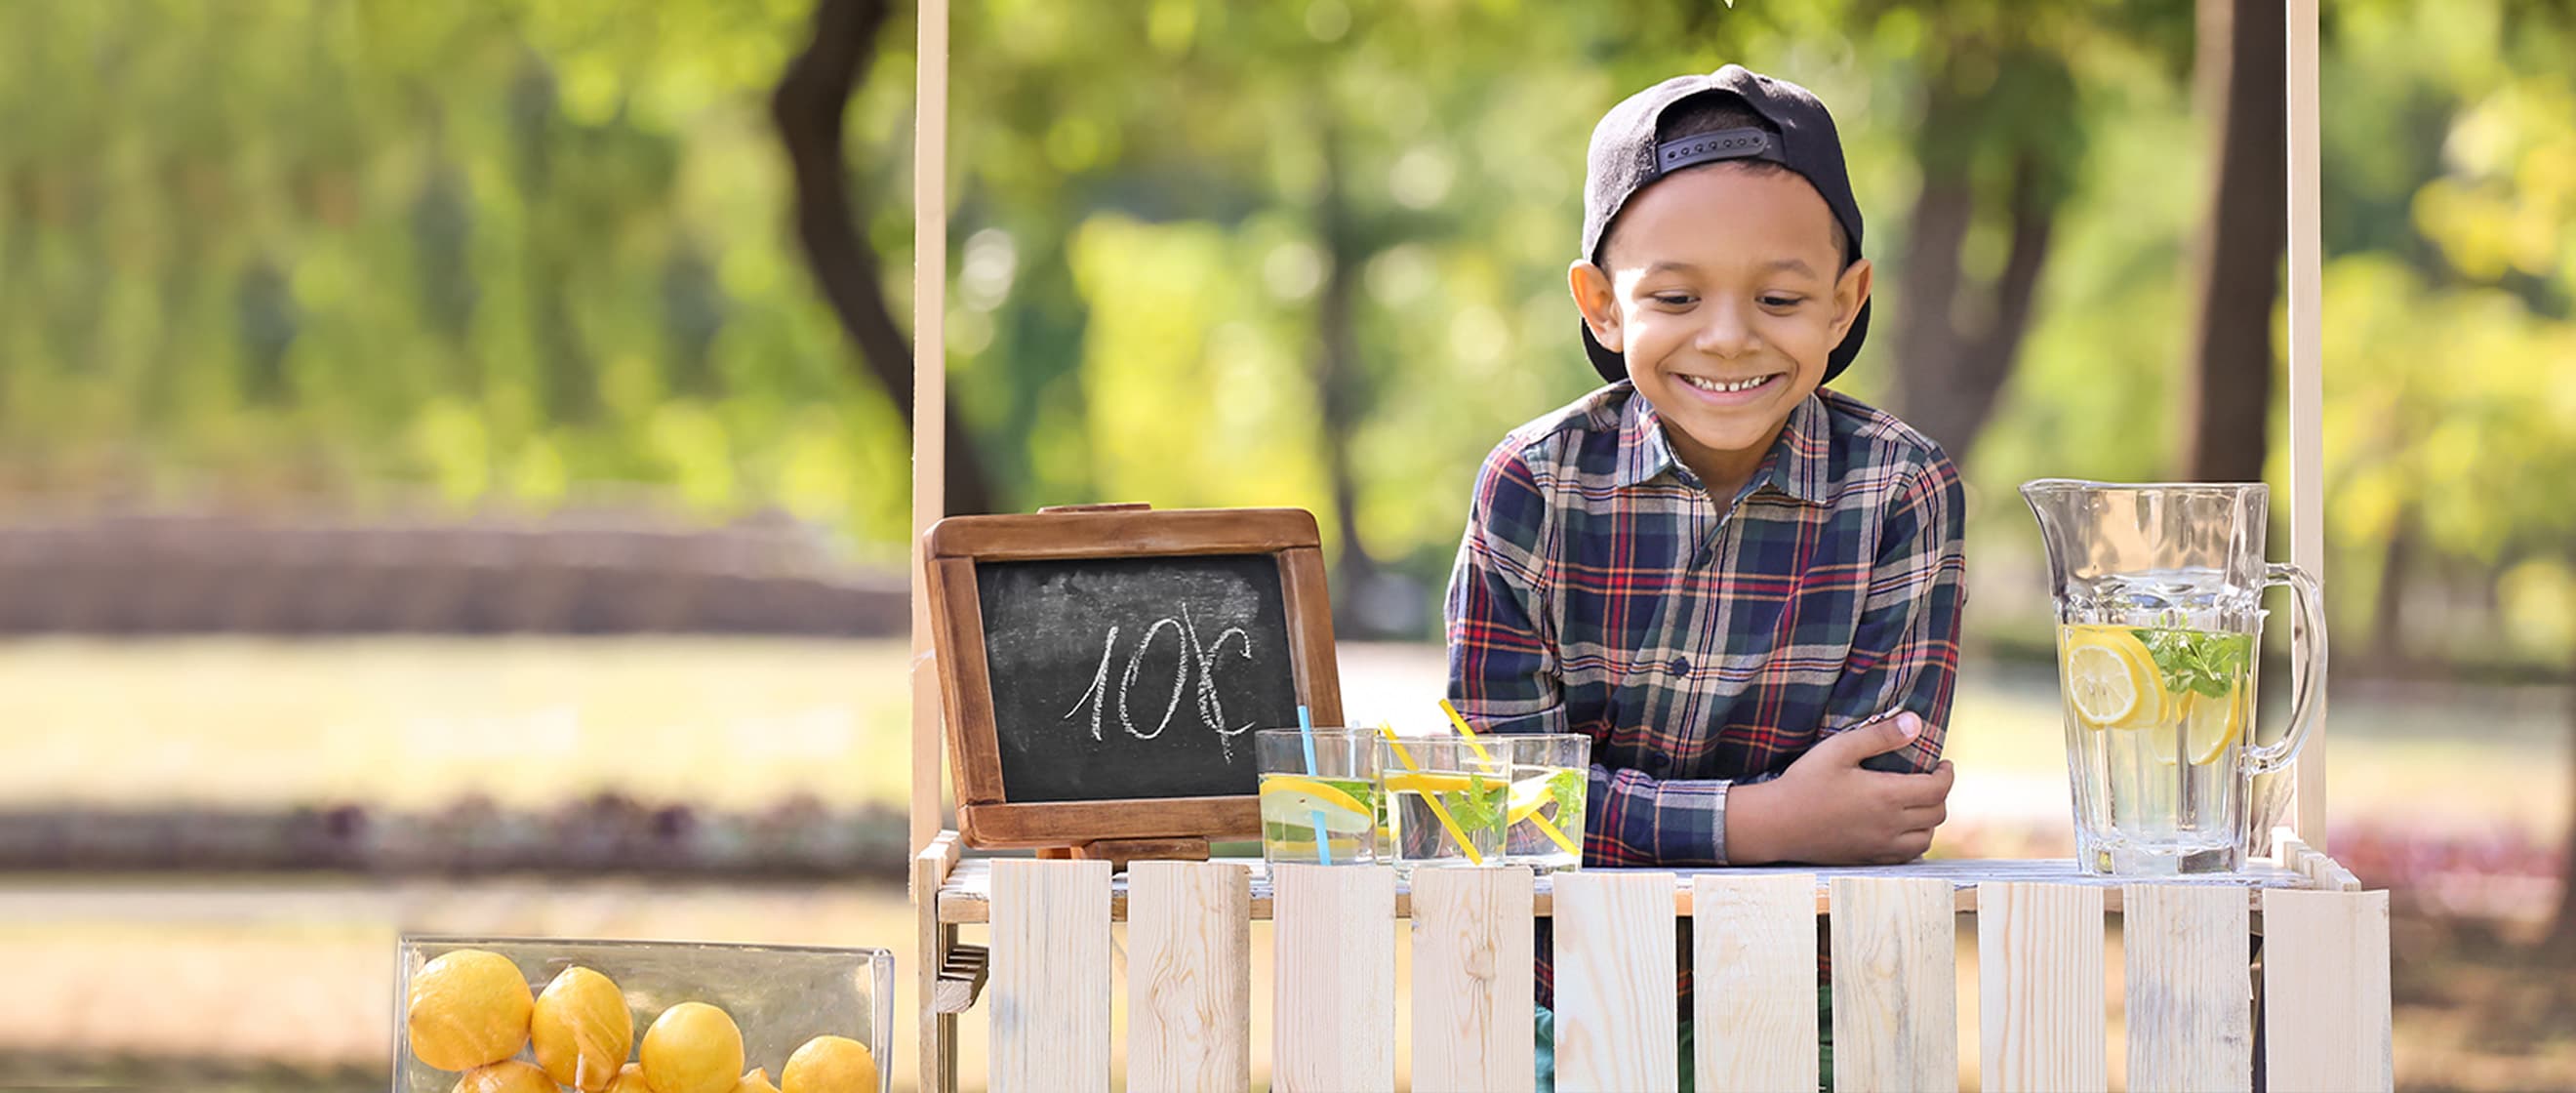 Un jeune garçon est assis derrière un stand de limonade placé à l’extérieur dans un parc arboré.